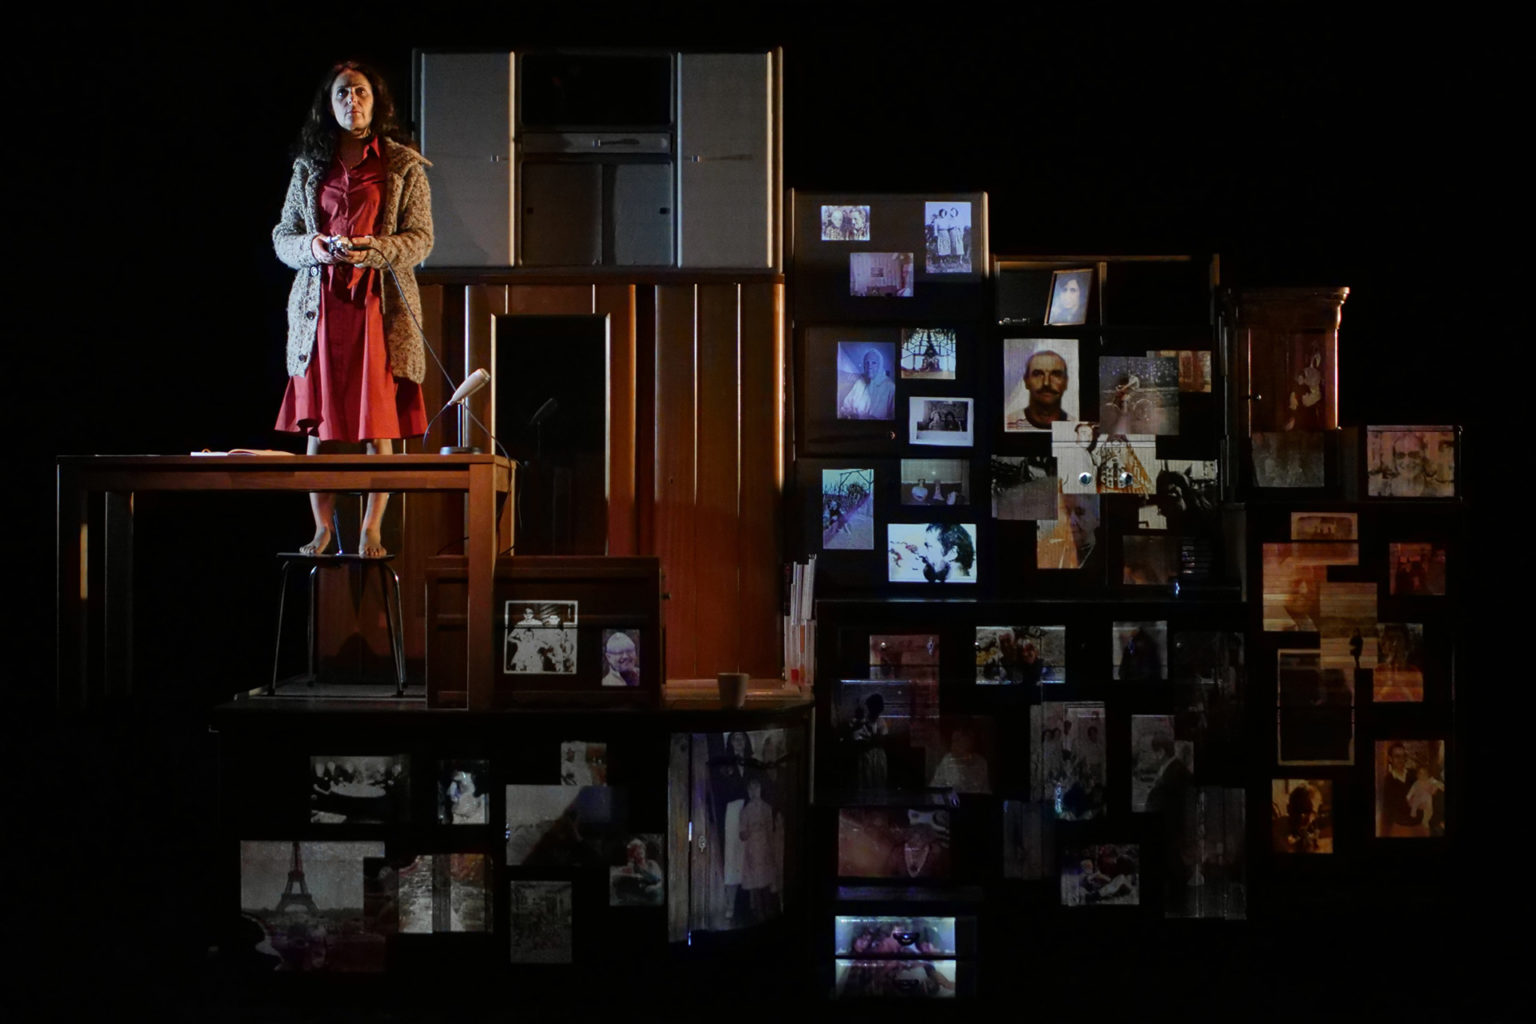 Jasmina Douieb est debout, sur un tabouret. Elle porte une robe rouge et un gilet. Elle est devant un grand meuble à tiroirs. Elle tient un enregistreur en mains.